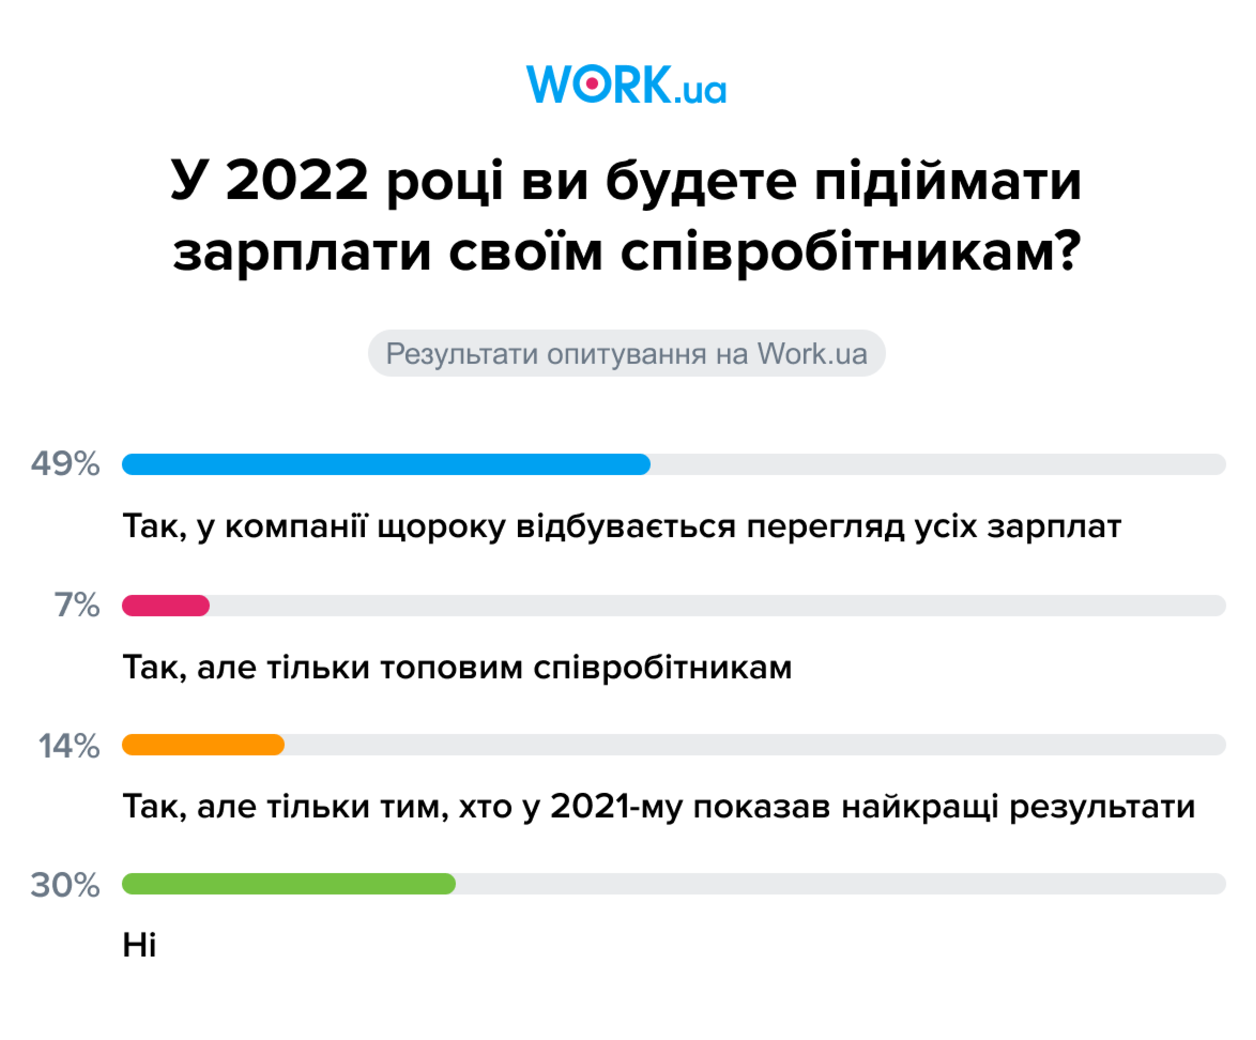 Опитування проводилося в грудні 2021. У ньому взяли участь 816 осіб